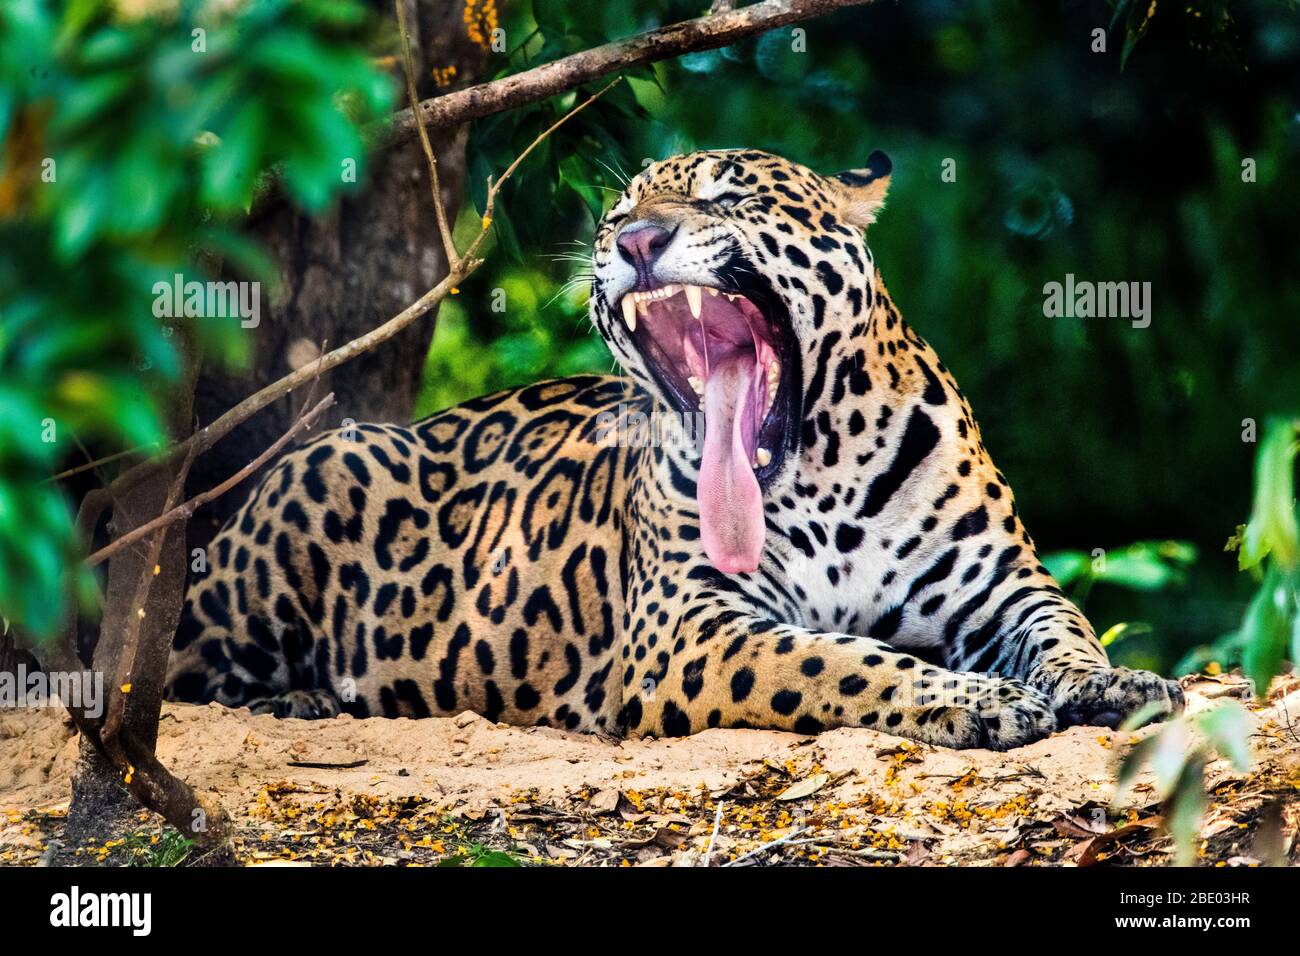 View of roaring jaguar lying in jungle, Pantanal, Brazil Stock Photo